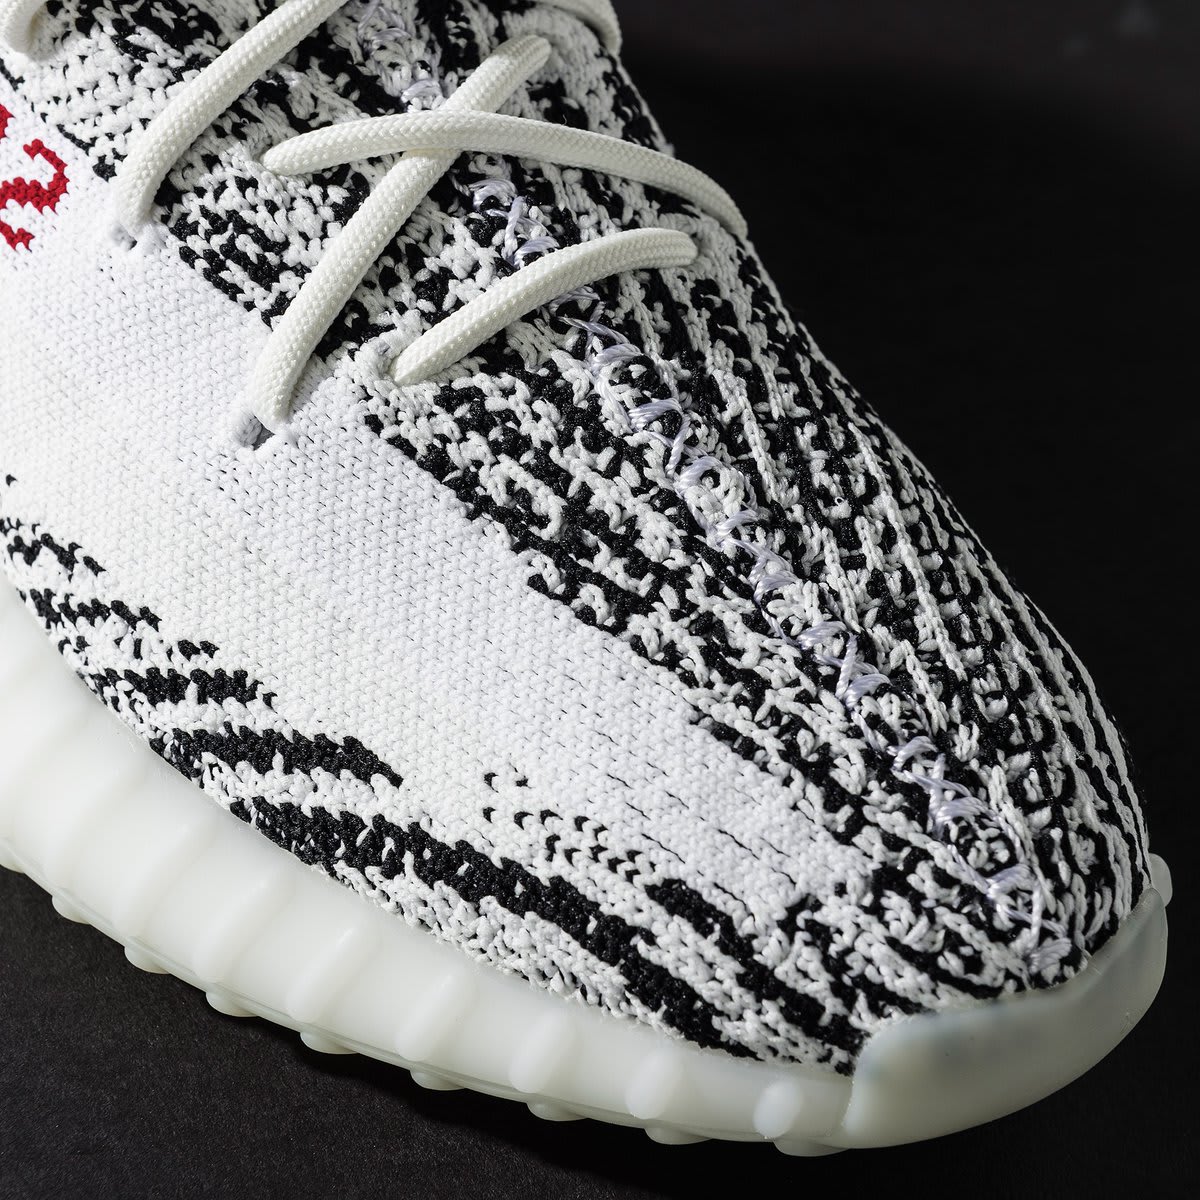 adidas yeezy boost 350 v2 zebra release